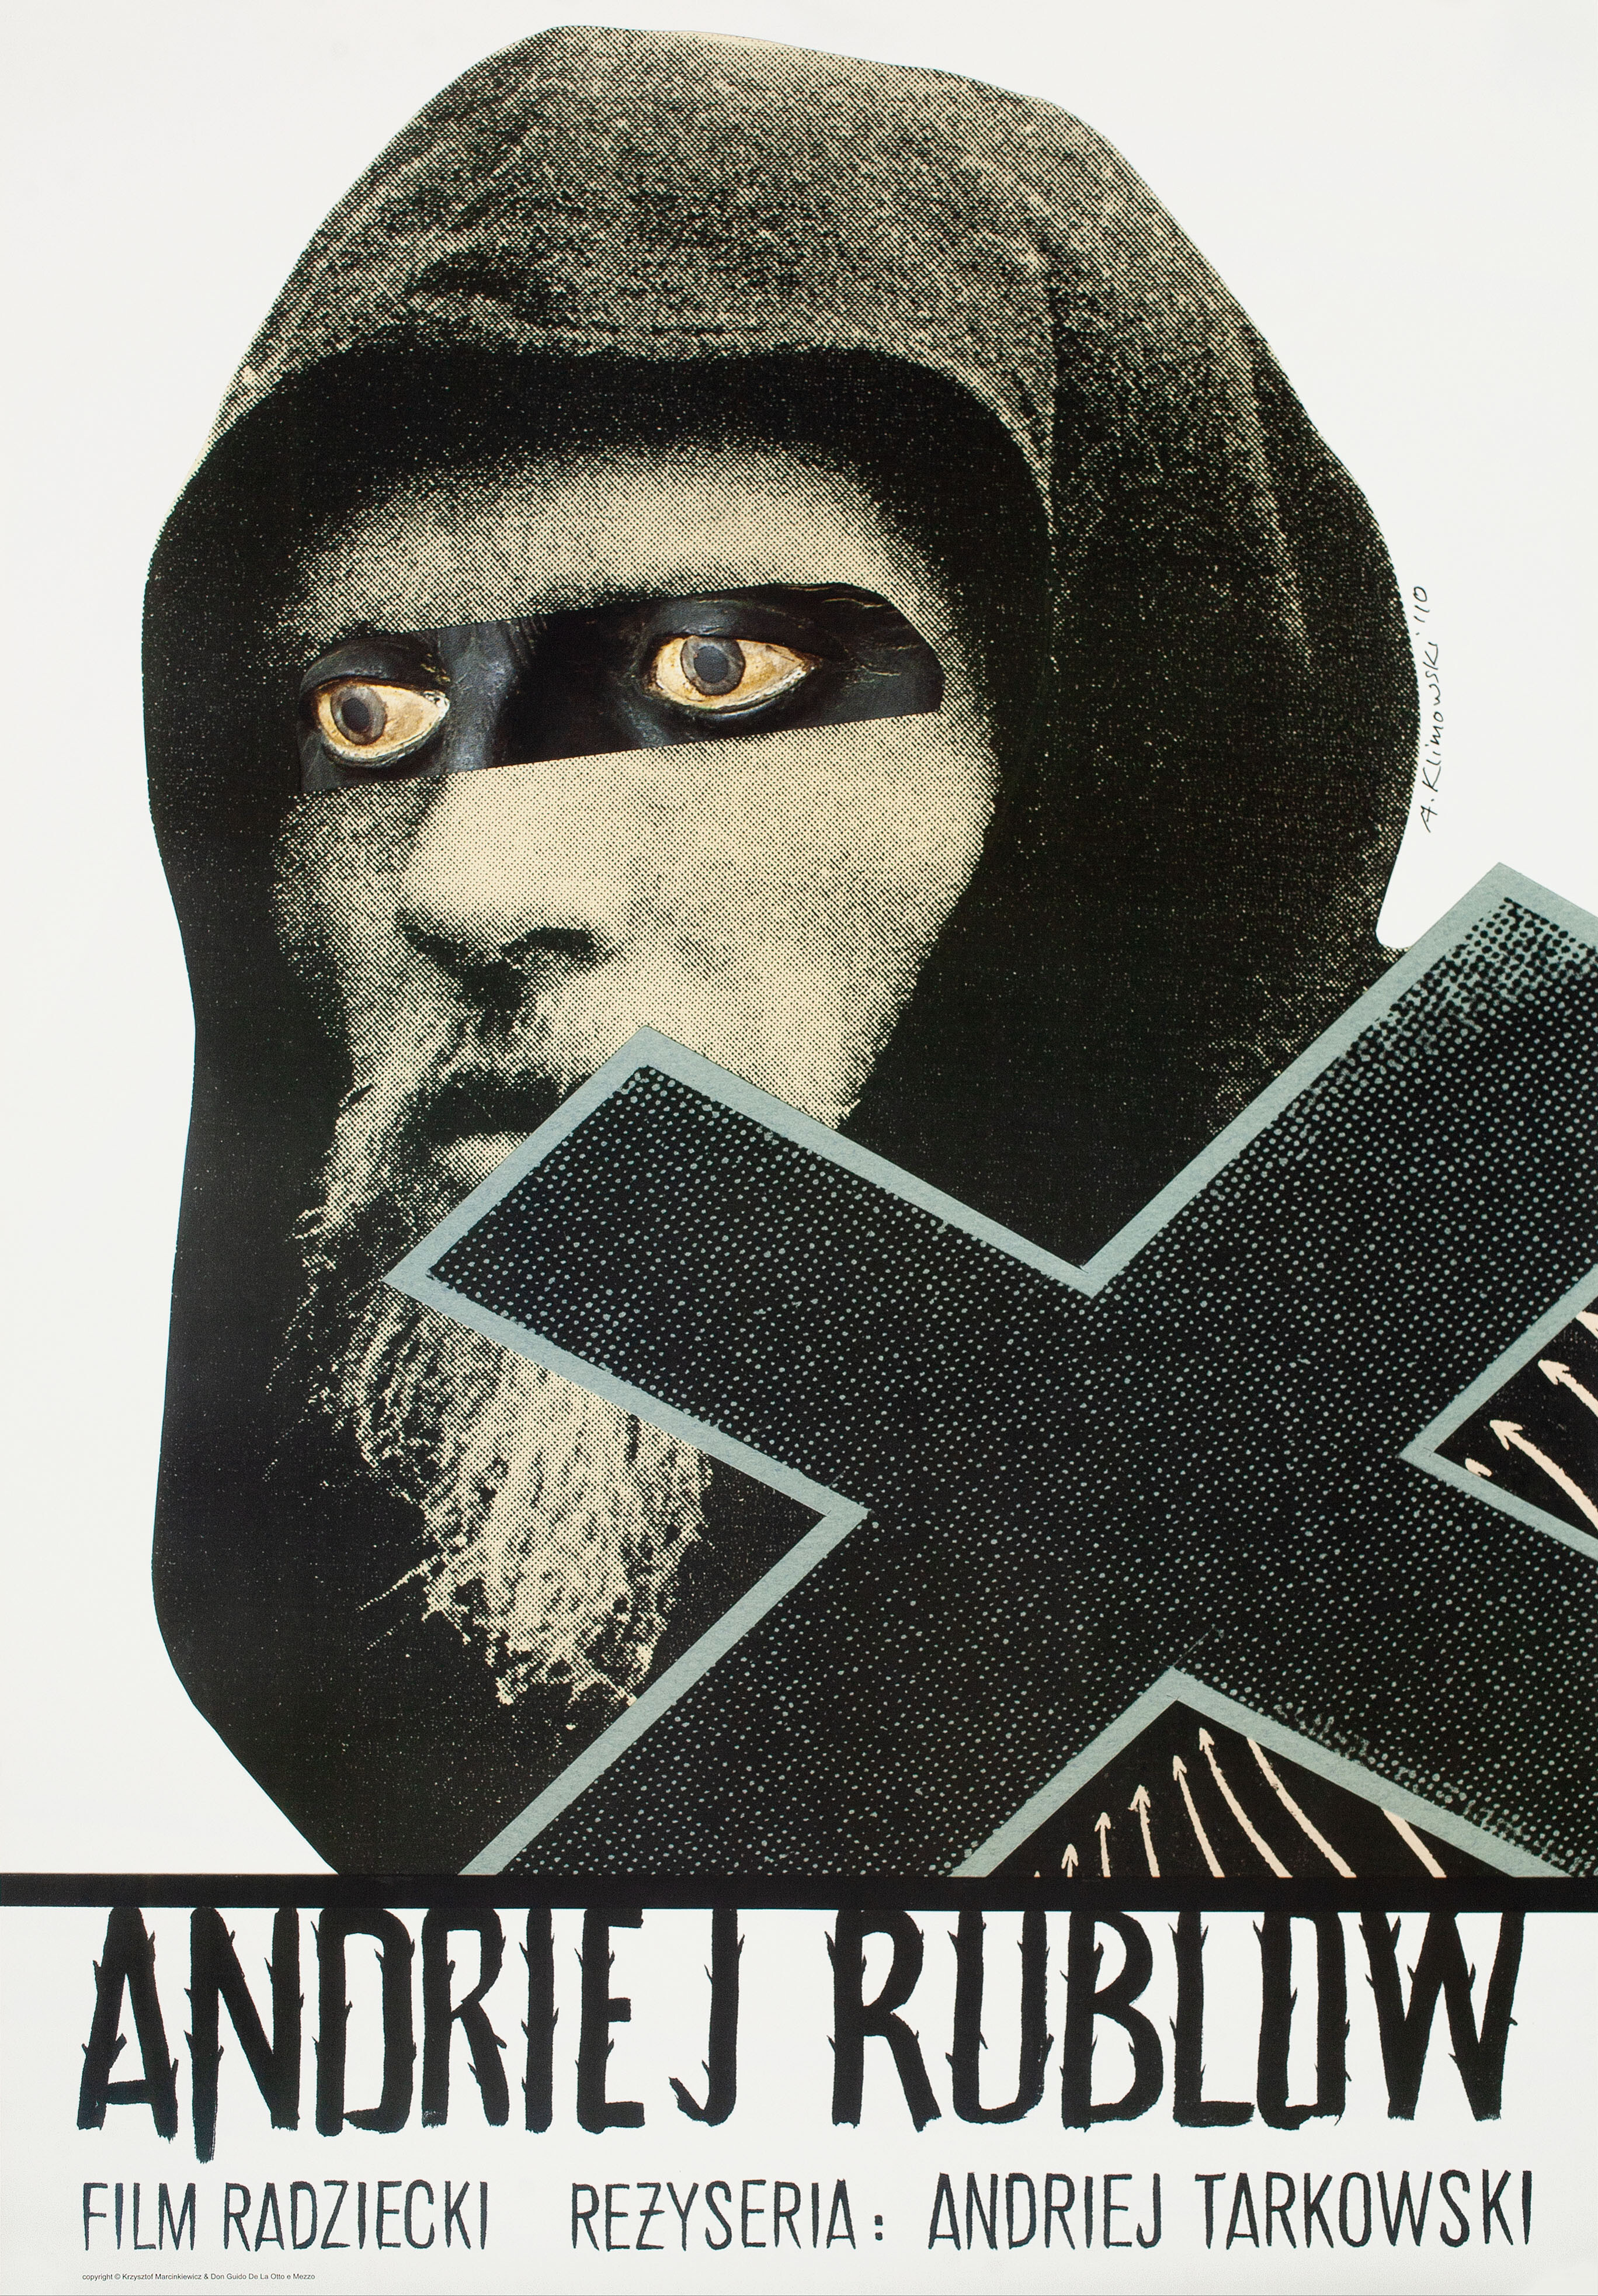 Андрей Рублёв (режиссёр Андрей Тарковский, 1966), польский постер к фильму, автор Анджей Климовский, 2010 год